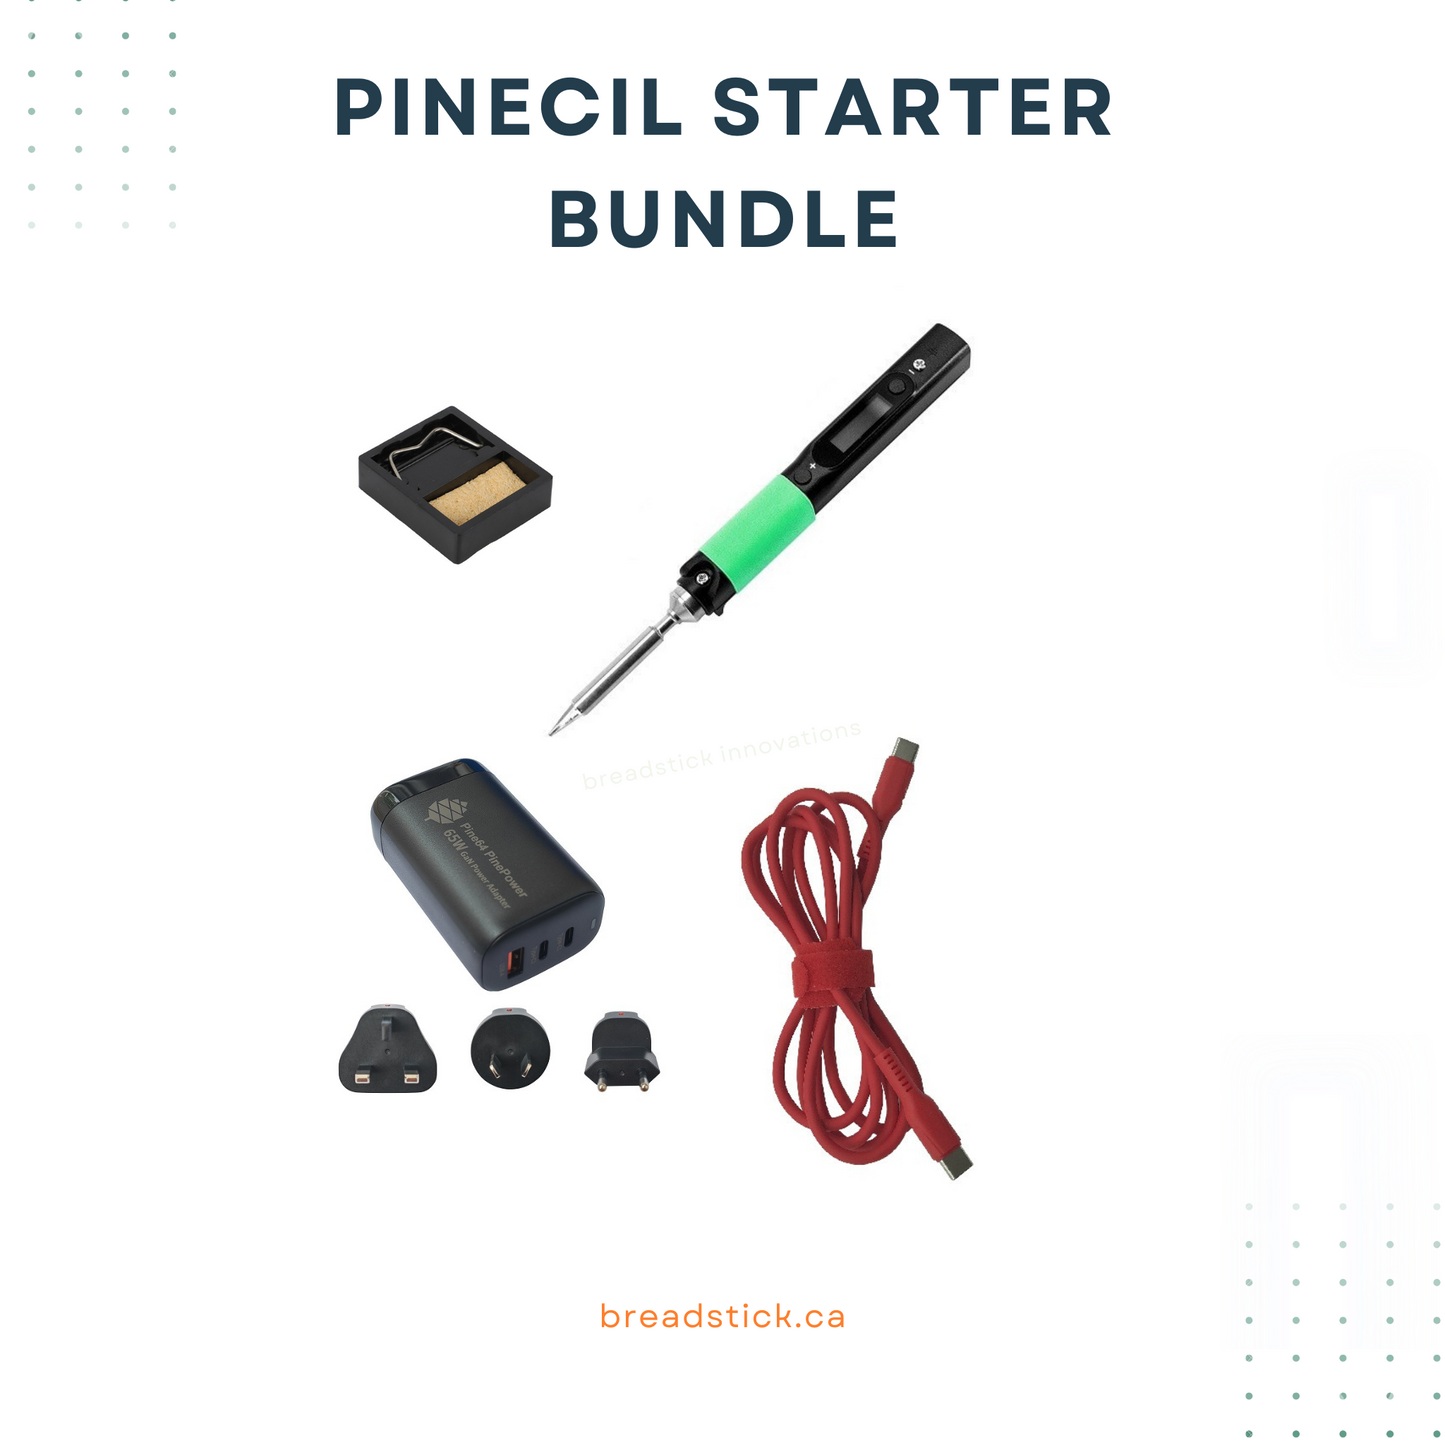 Pinecil Starter bundle